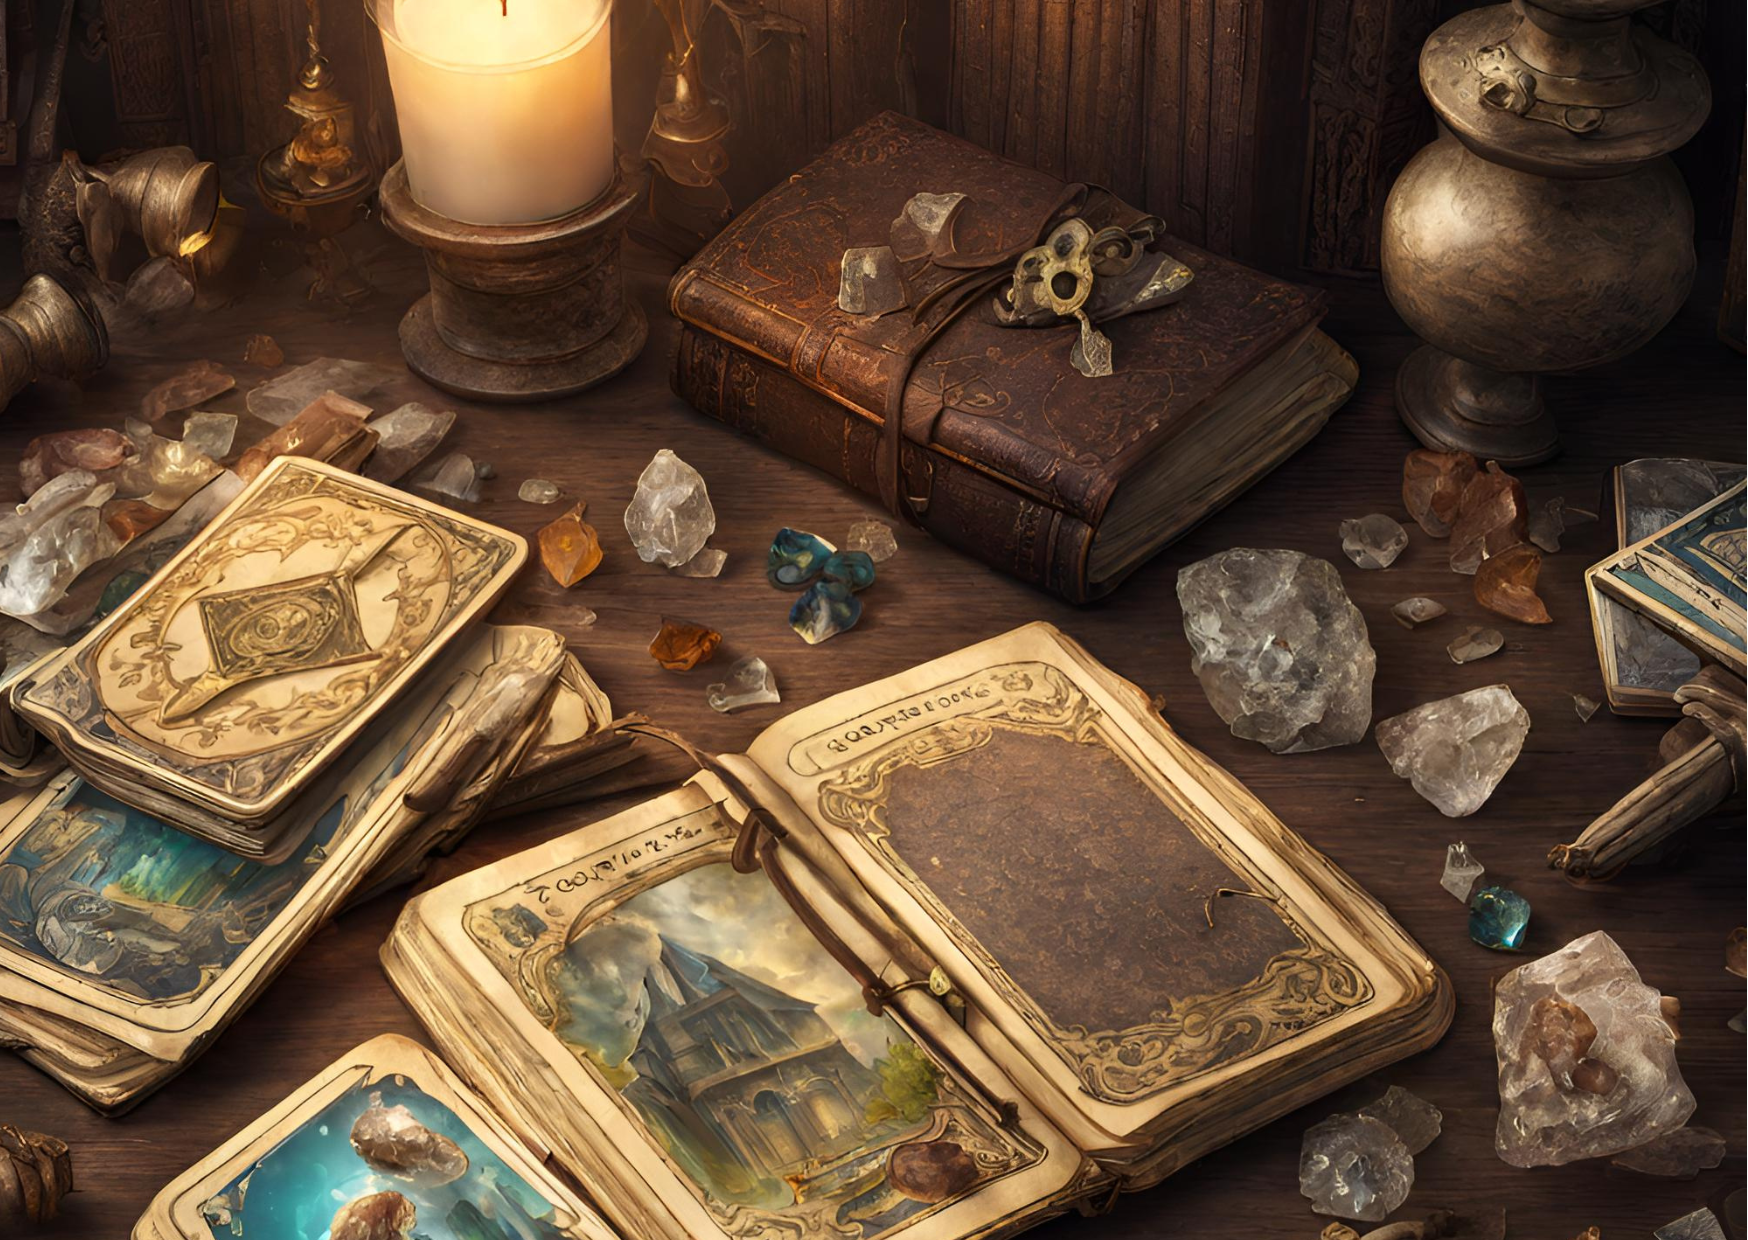 Tisch mit Tarotkarten, bunten Kristallen, einer brennenden Kerze und einem in Leder gebundenem Buch.